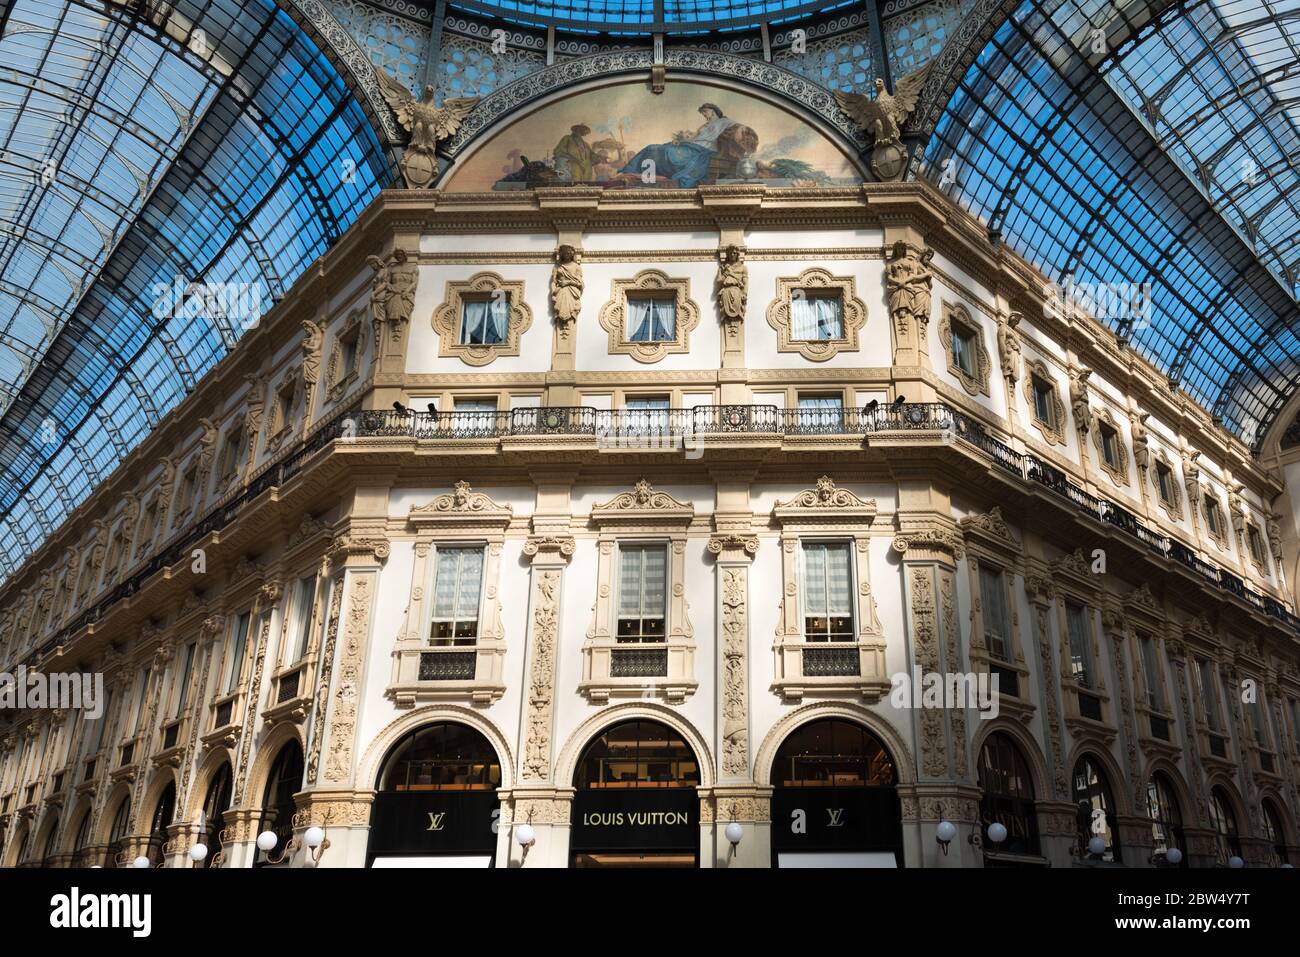 MILANO, ITALIA - 16 MARZO 2018: Immagine orizzontale degli interni decorati della Galleria Vittorio Emanuele II, situata a Milano Foto Stock